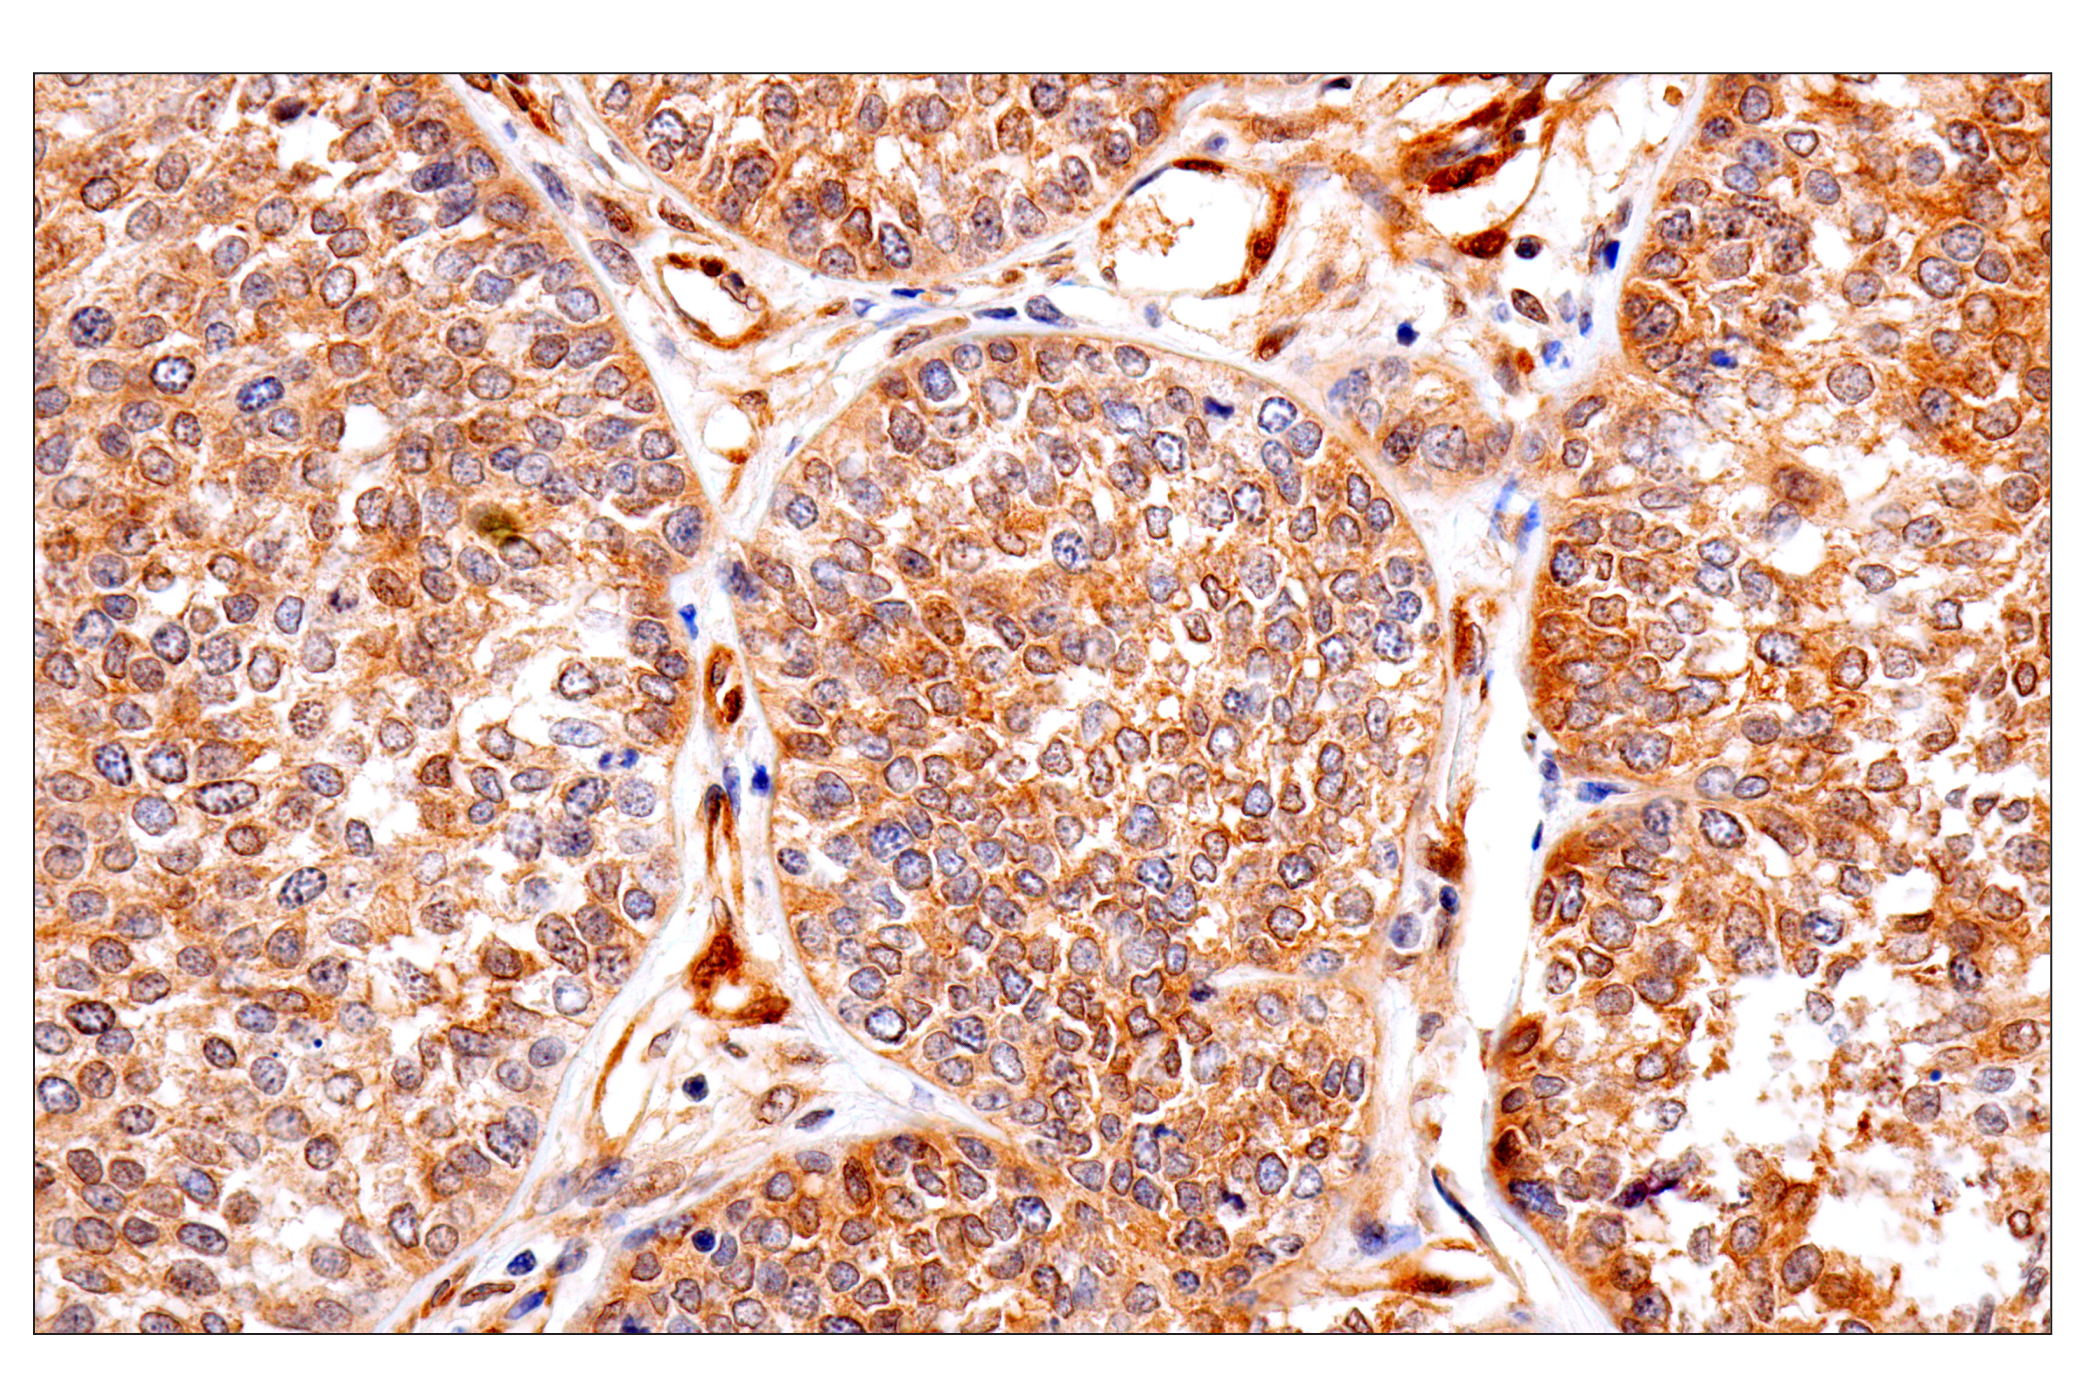  Image 15: Oncogene and Tumor Suppressor Antibody Sampler Kit